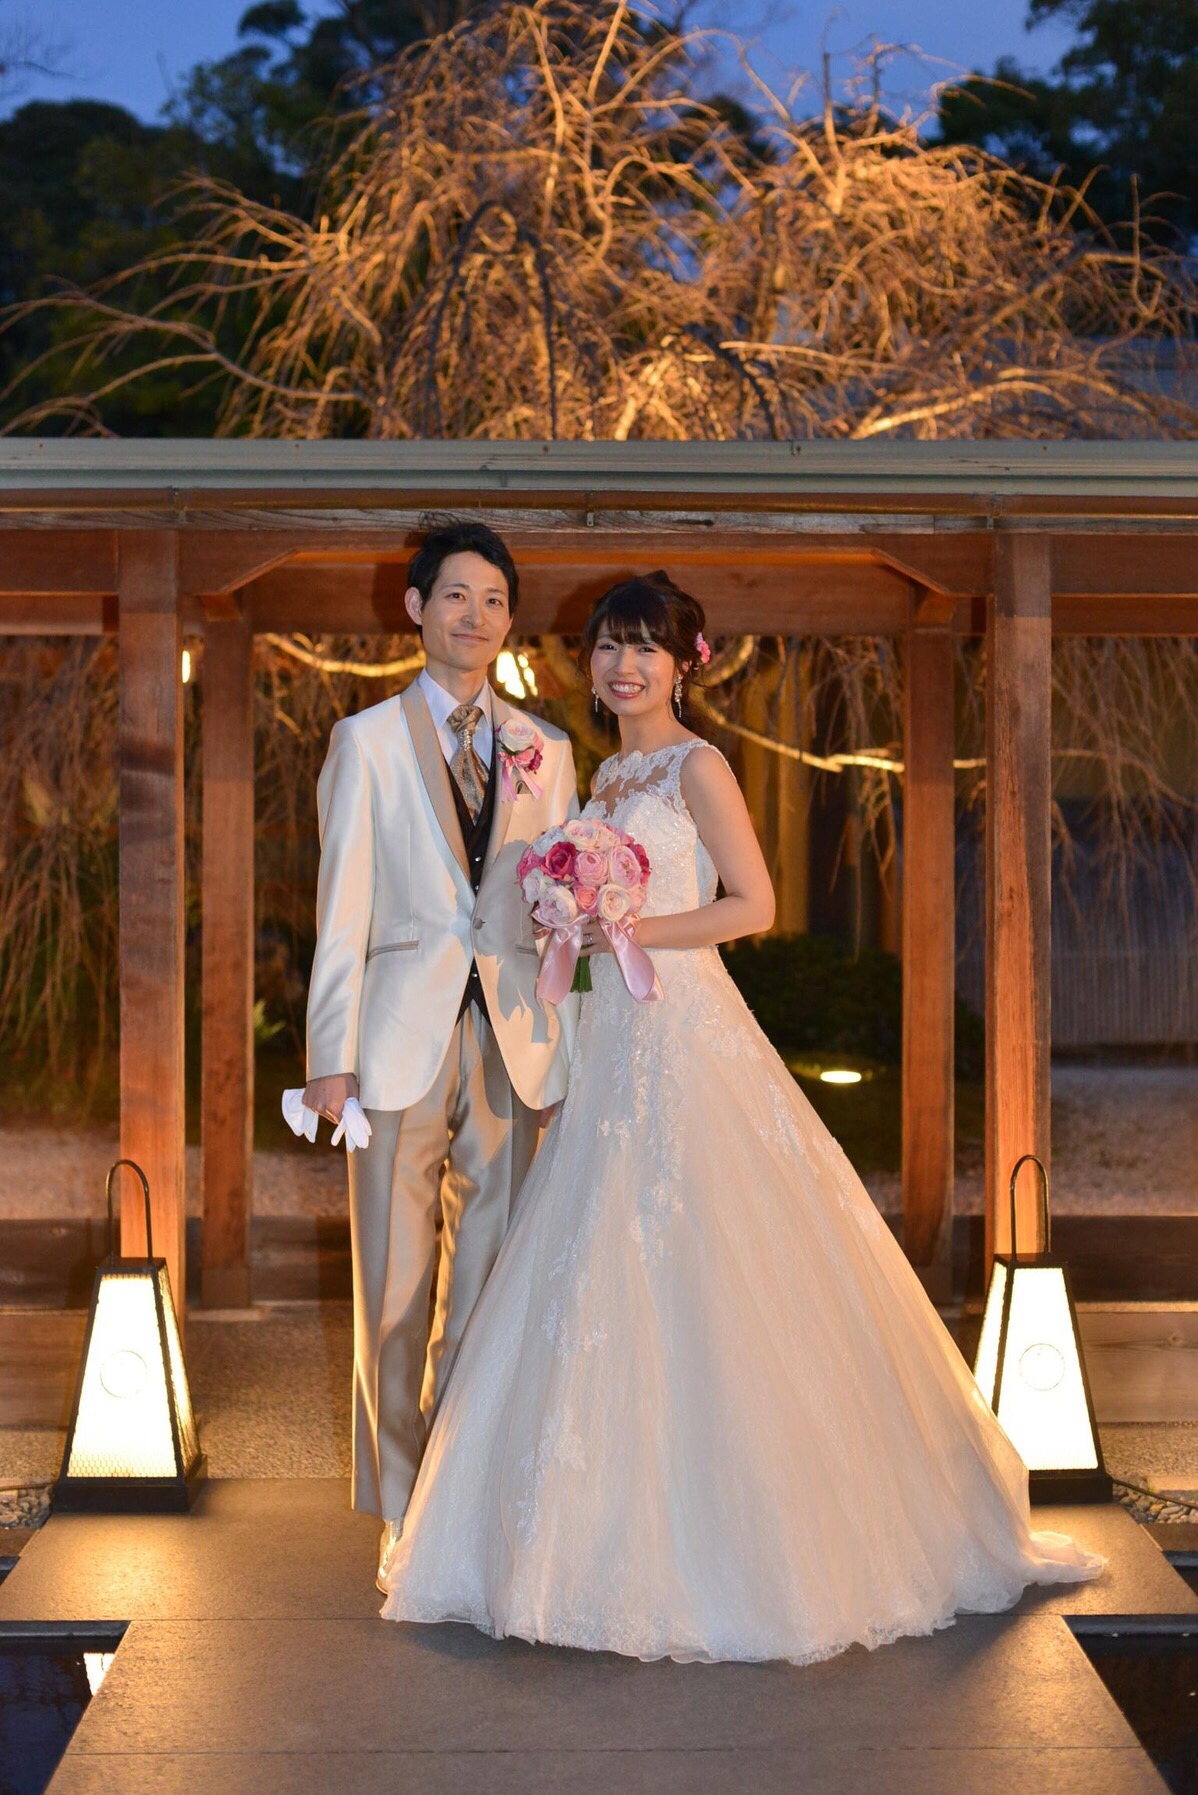 ガーデンレストラン徳川園 Garden Restaurant Tokugawaen で結婚式 ウェディングニュース